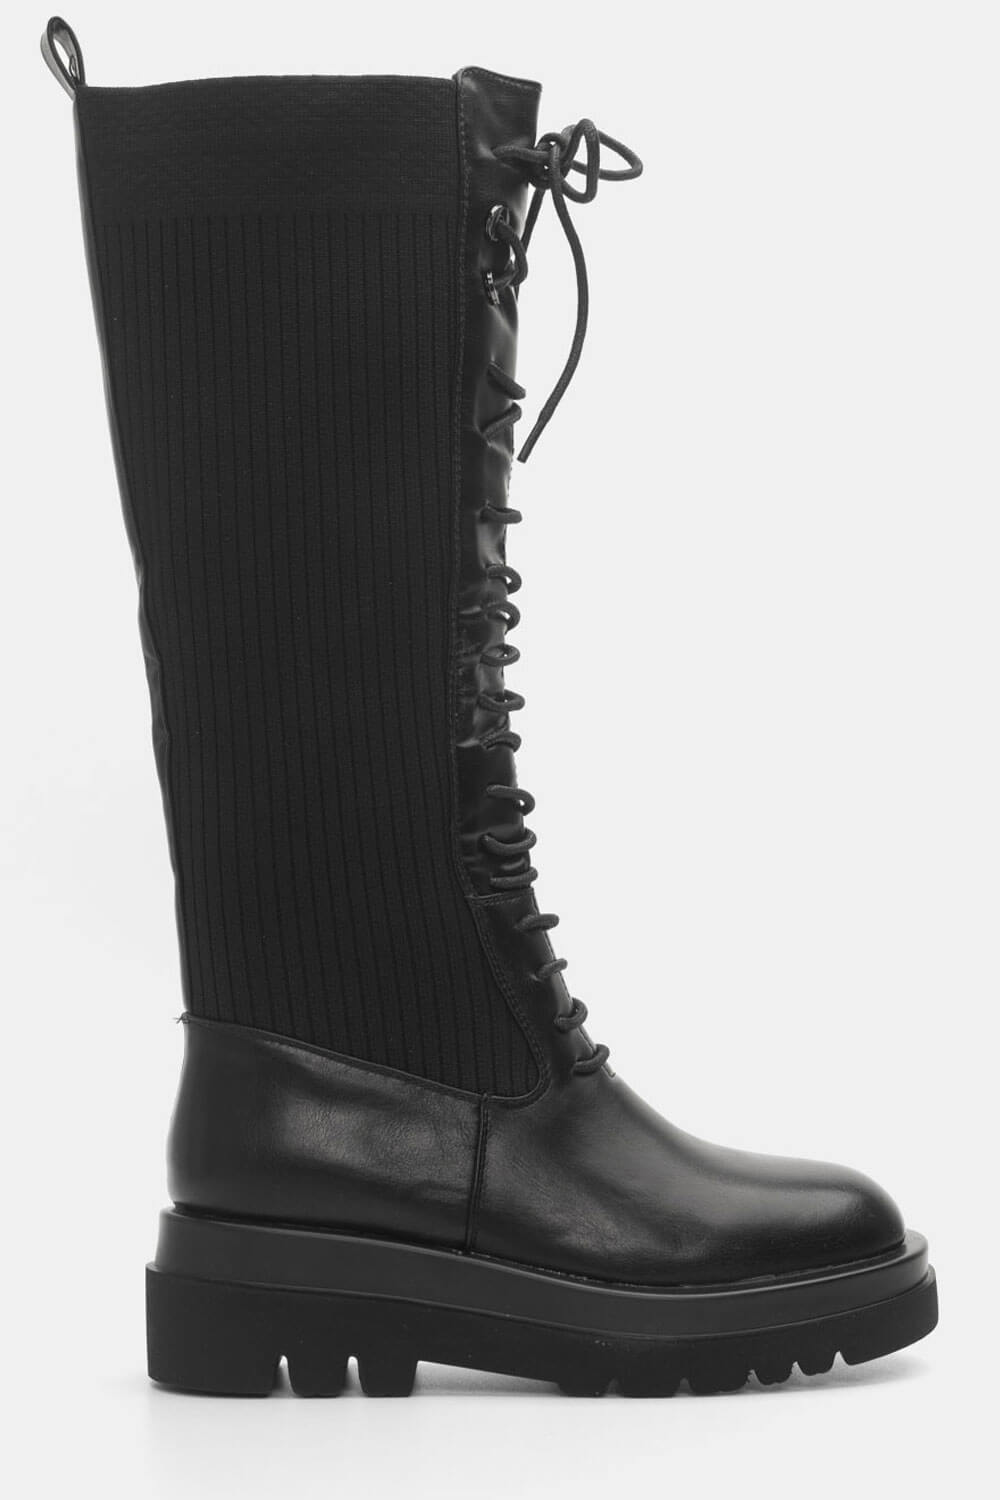 Μπότες > Μπότες Flat Μπότες Δίσολες με Λάστιχο & Κορδόνια - Μαύρο